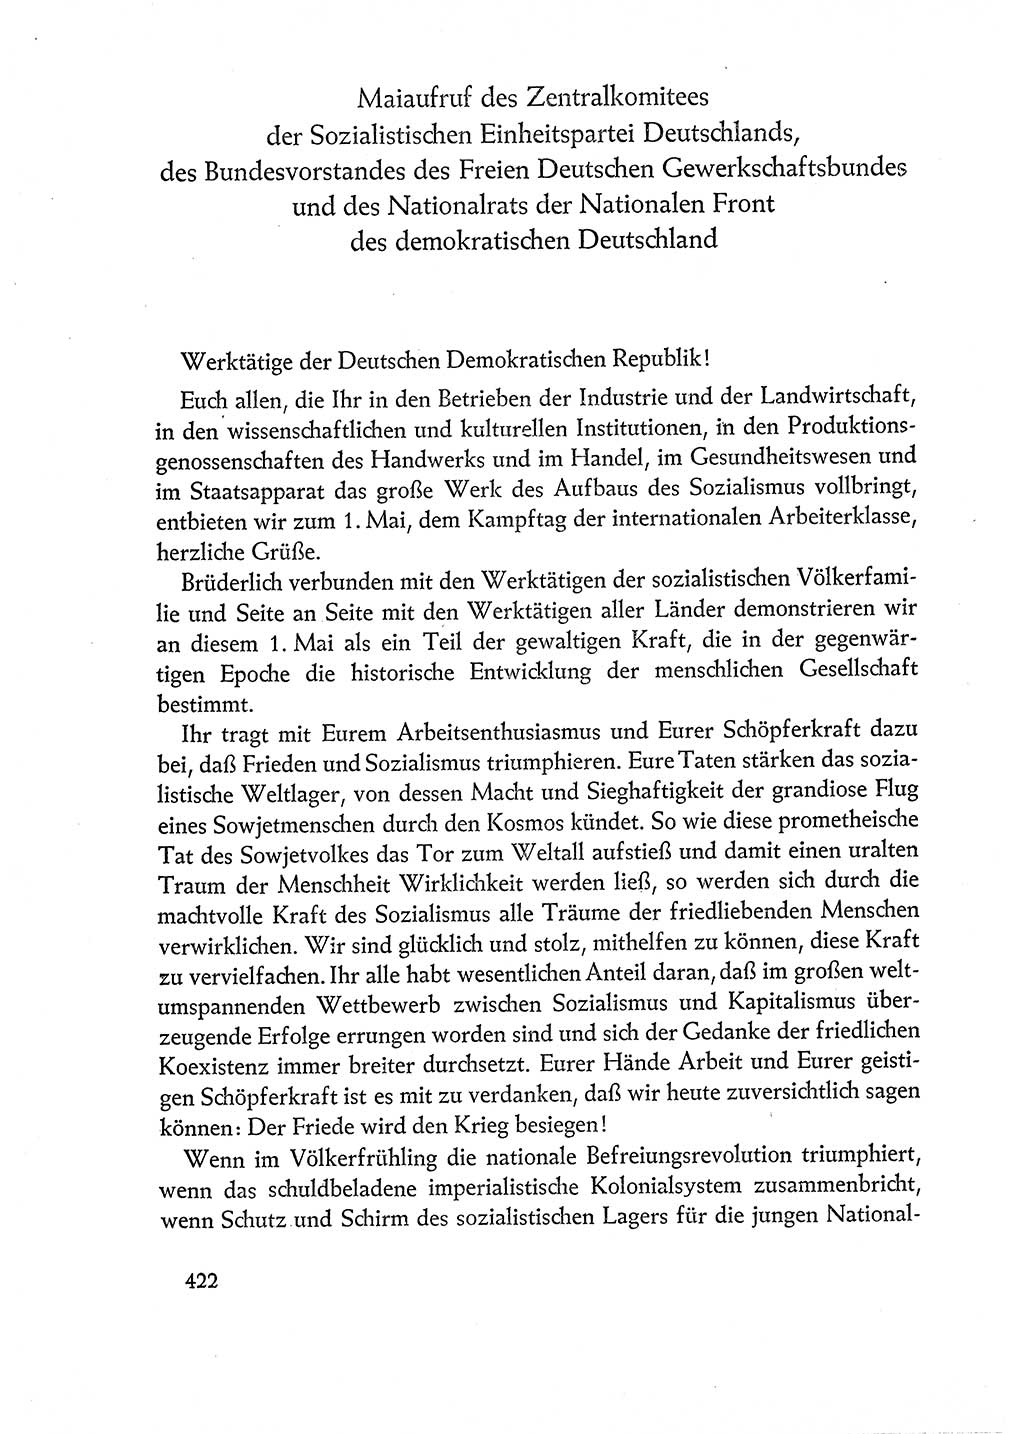 Dokumente der Sozialistischen Einheitspartei Deutschlands (SED) [Deutsche Demokratische Republik (DDR)] 1960-1961, Seite 422 (Dok. SED DDR 1960-1961, S. 422)